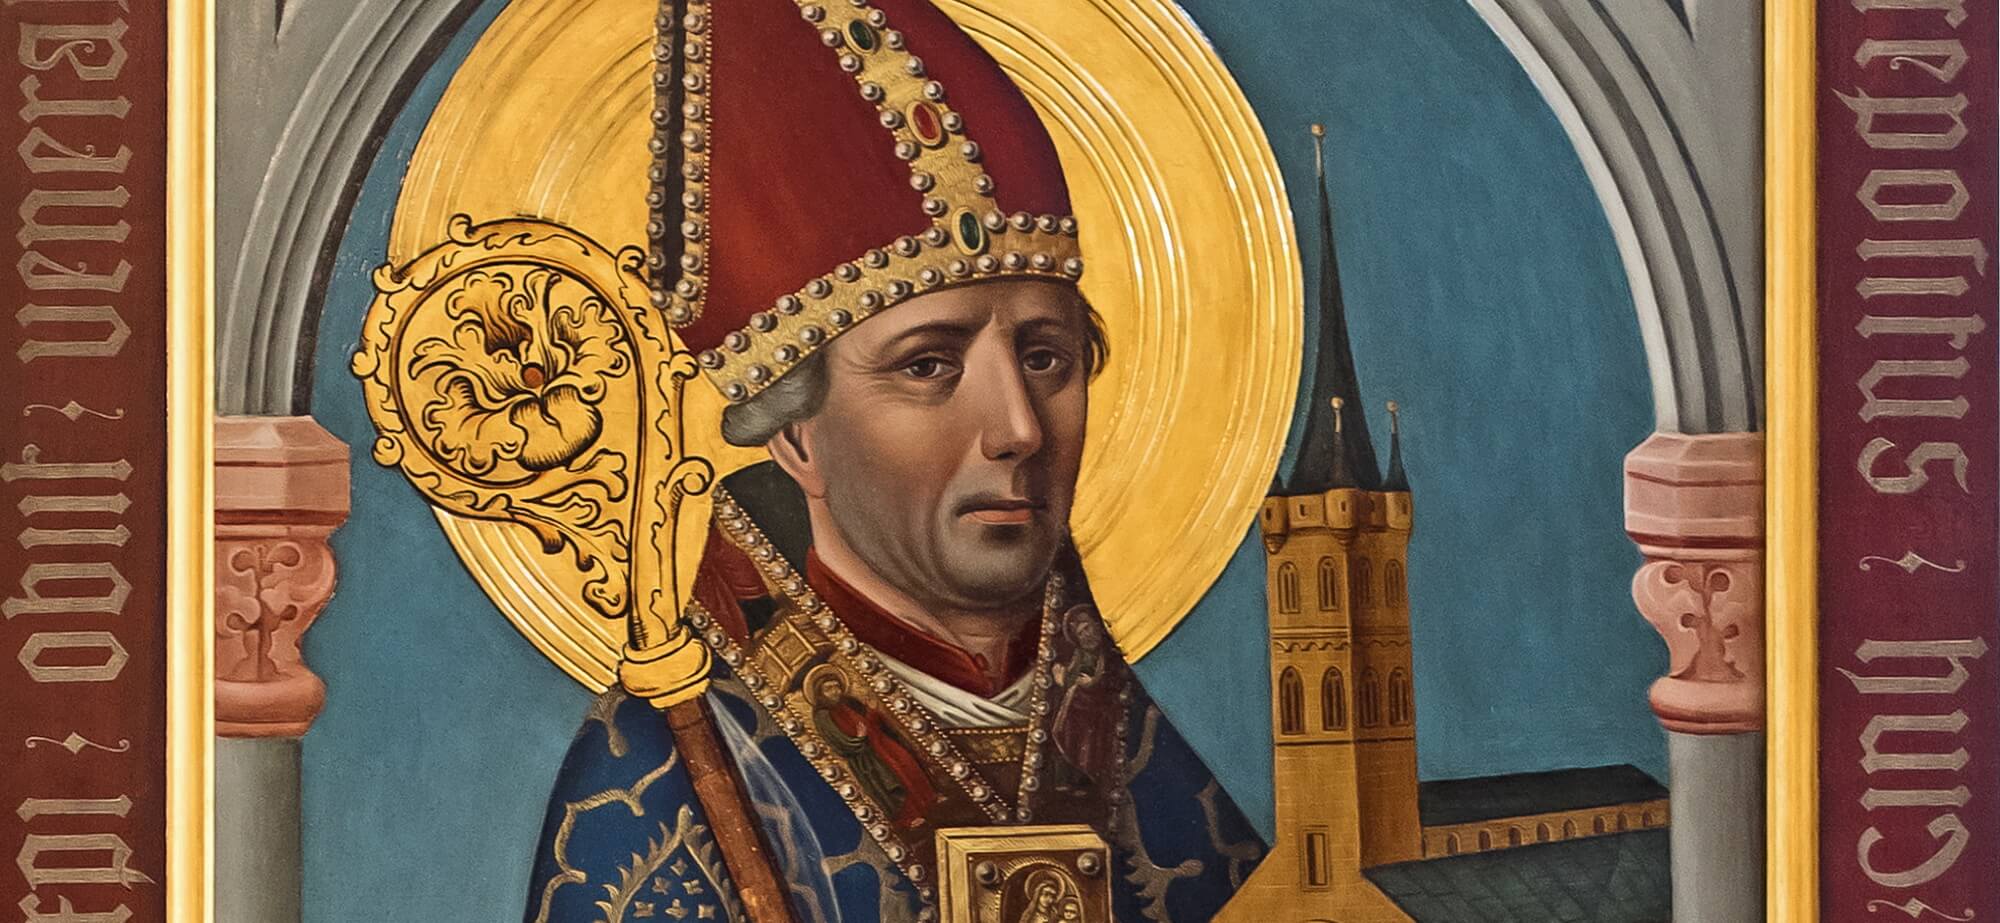 Ausschnitt eines Tafelgemäldes des Heiligen Ansgars mit Insignien der Bischofswürde und einem Modell der Domkirche in den Händen